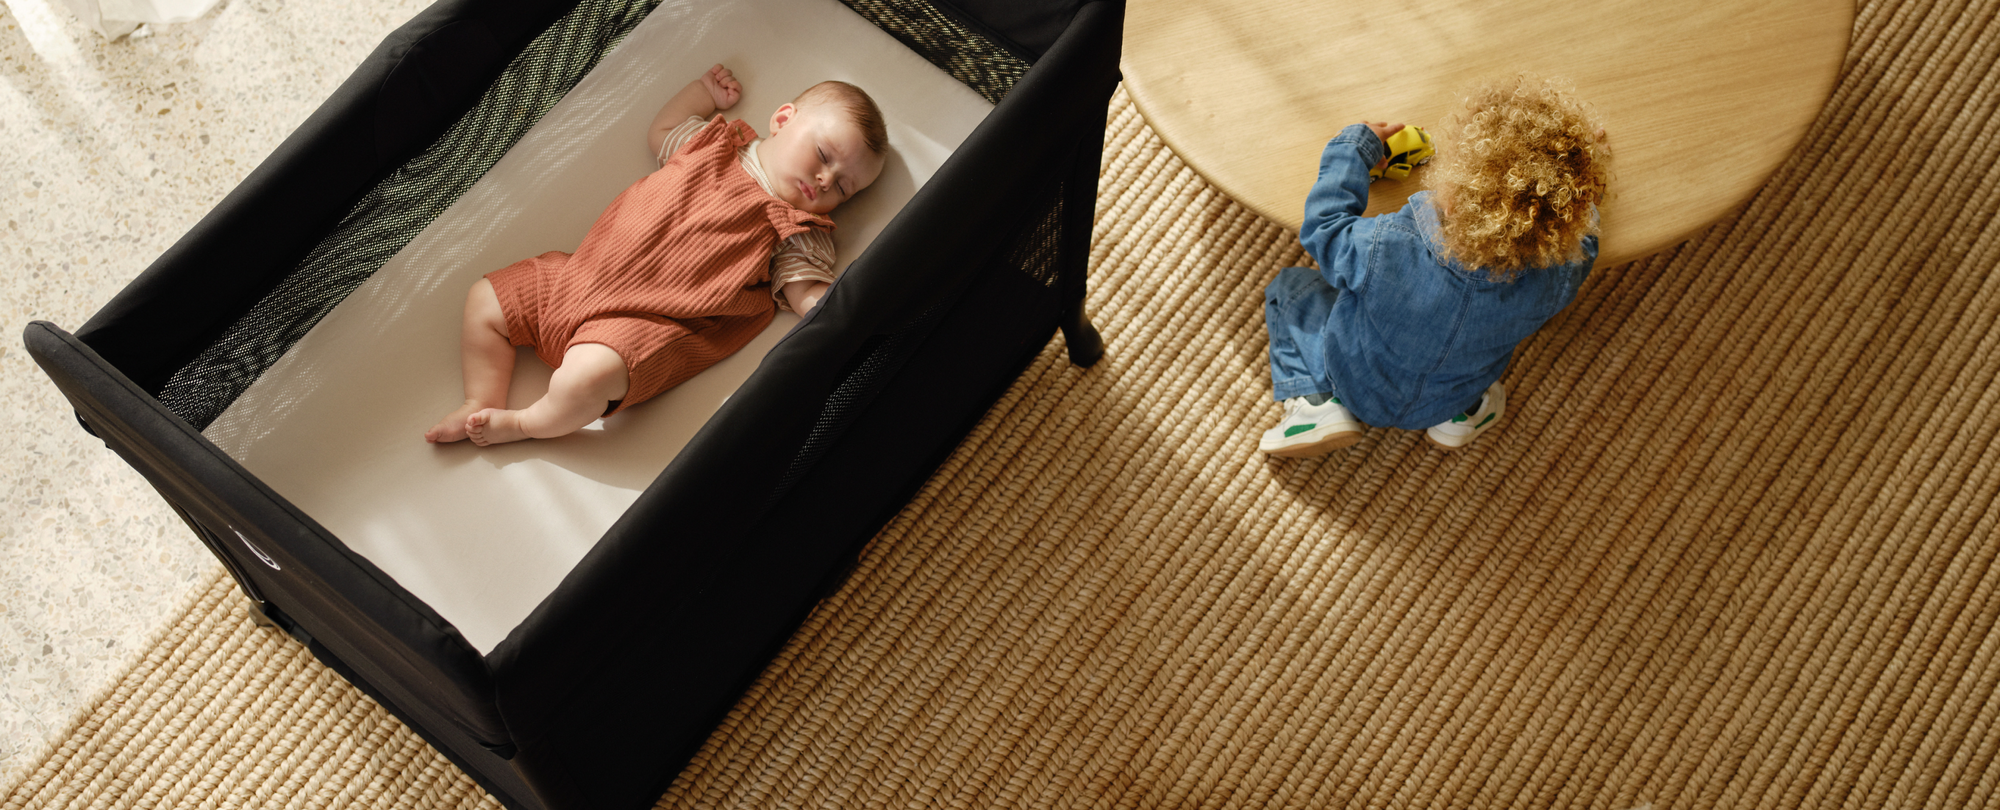 부가부 스타더스트 접이식 아기 침대 안에서 평화롭게 낮잠을 자고 있는 아이를 위에서 바라본 모습. 접이식 아기 침대 옆에는 어린 아이가 낮은 테이블 앞에서 놀고 있습니다.